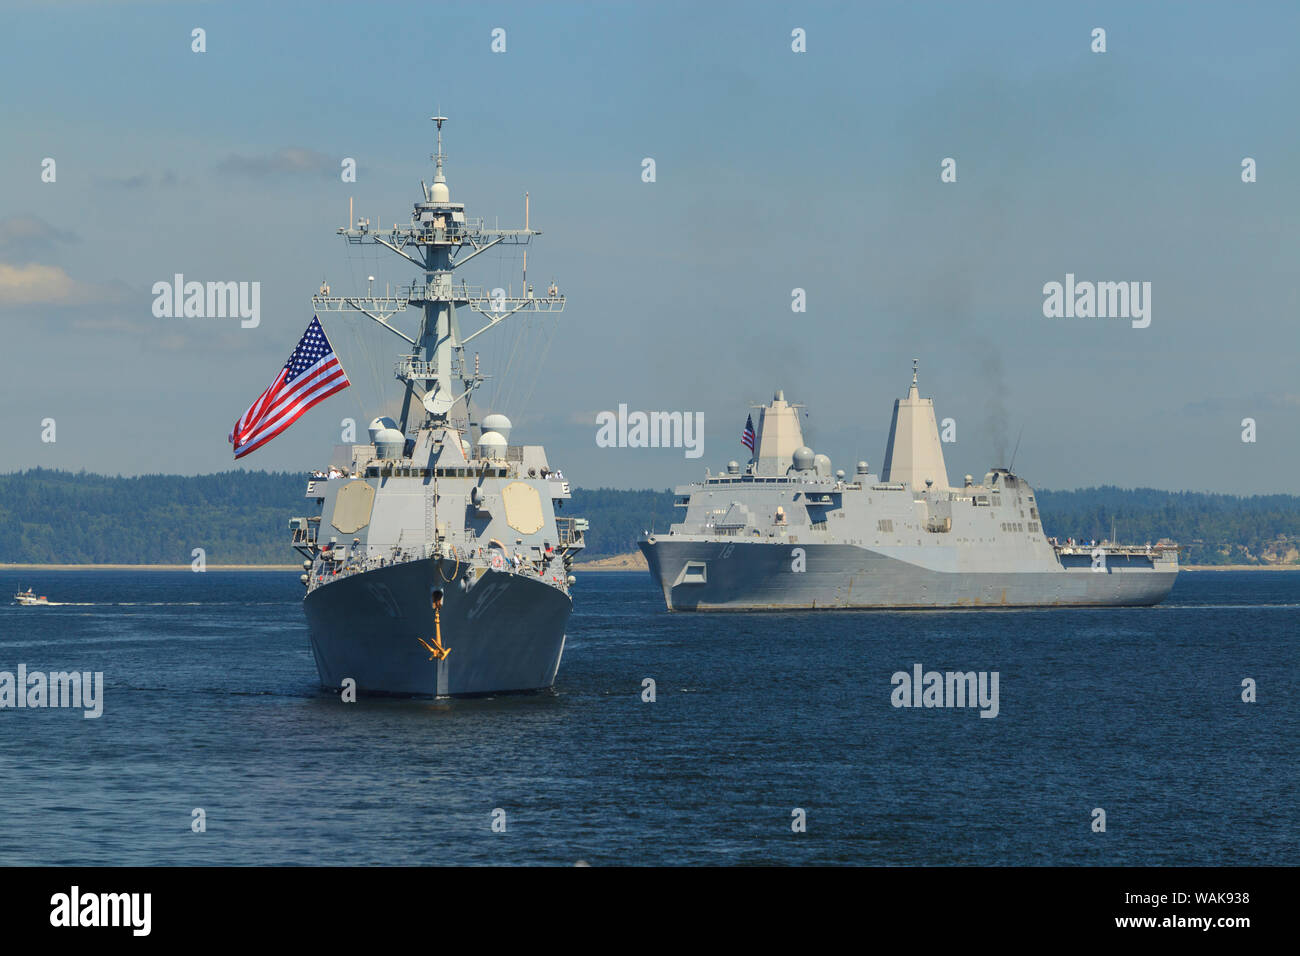 USS Halsey (destroyer) et USS New Orleans (Cruiser), visites à bord de l'USS Bunker Hill (CG 52), croiseur lance-missiles Seafair Parade Célébration des navires, la Fleet Week, Elliott Bay, Seattle, Washington State, USA Banque D'Images